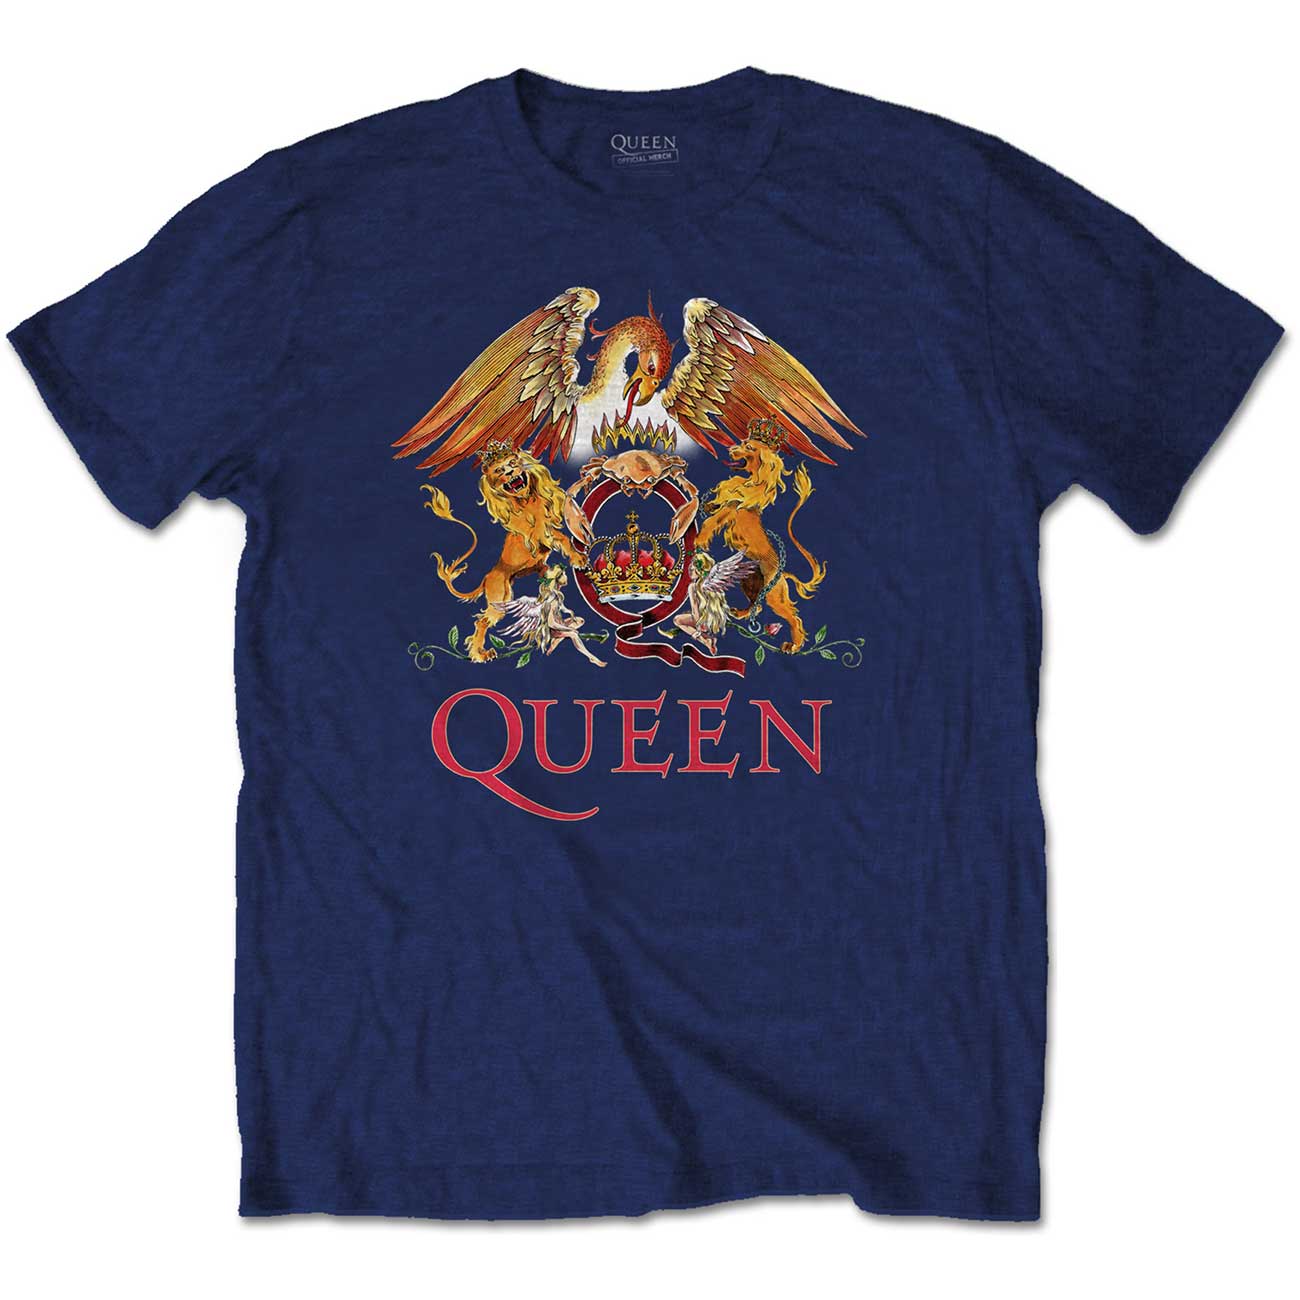 Queen - Classic Crest Navy (XL)